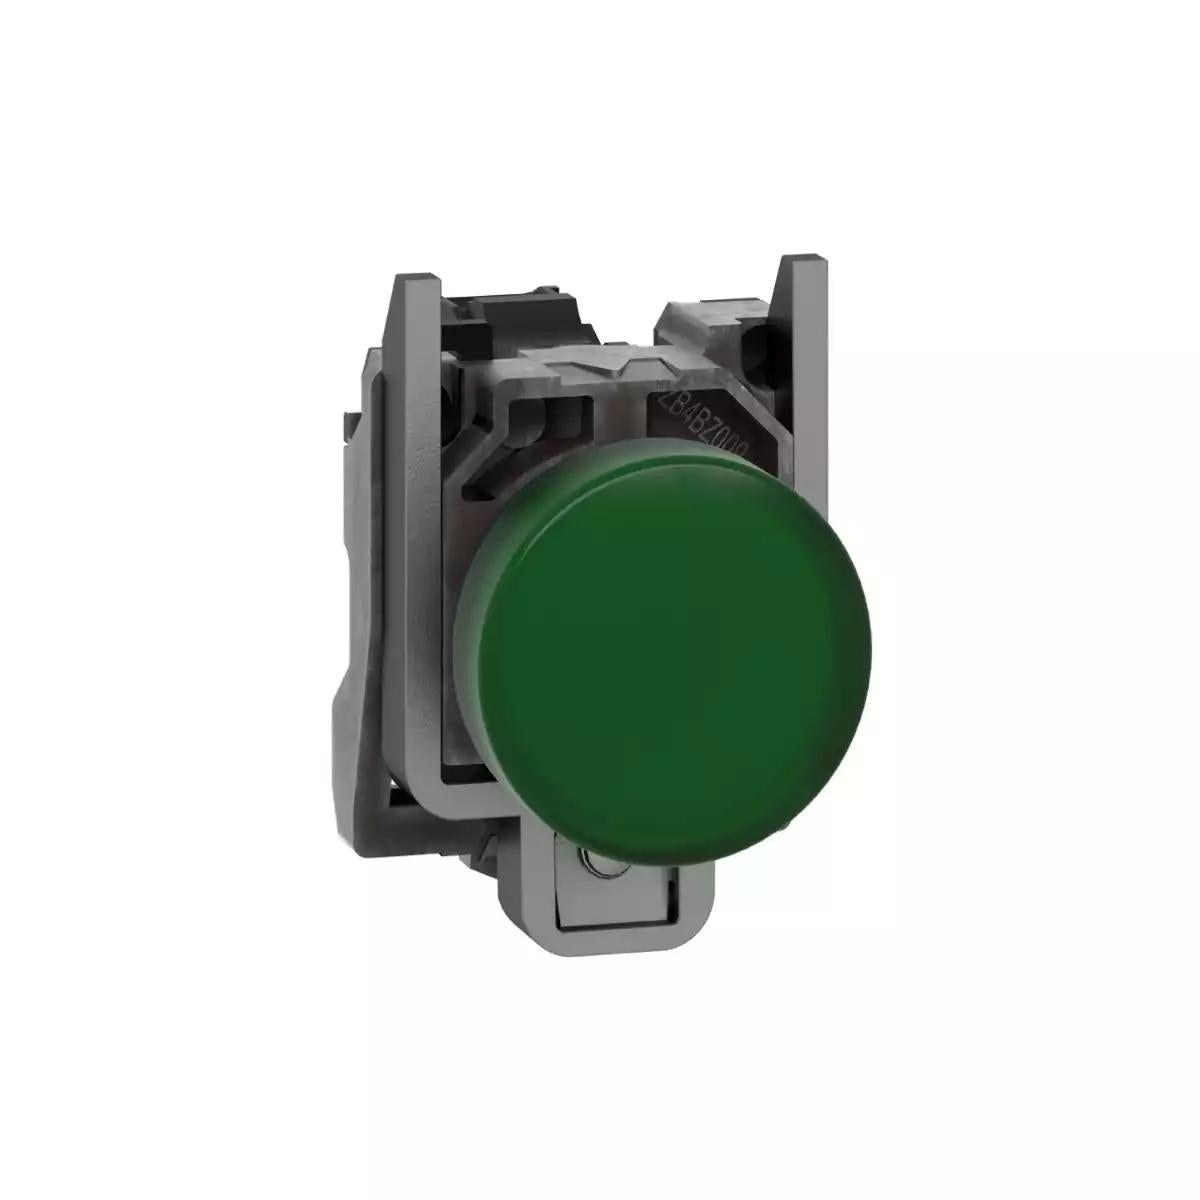 Pilot light, Harmony XB4,metal, green, 22mm, universal LED, plain lens, 110…120V AC